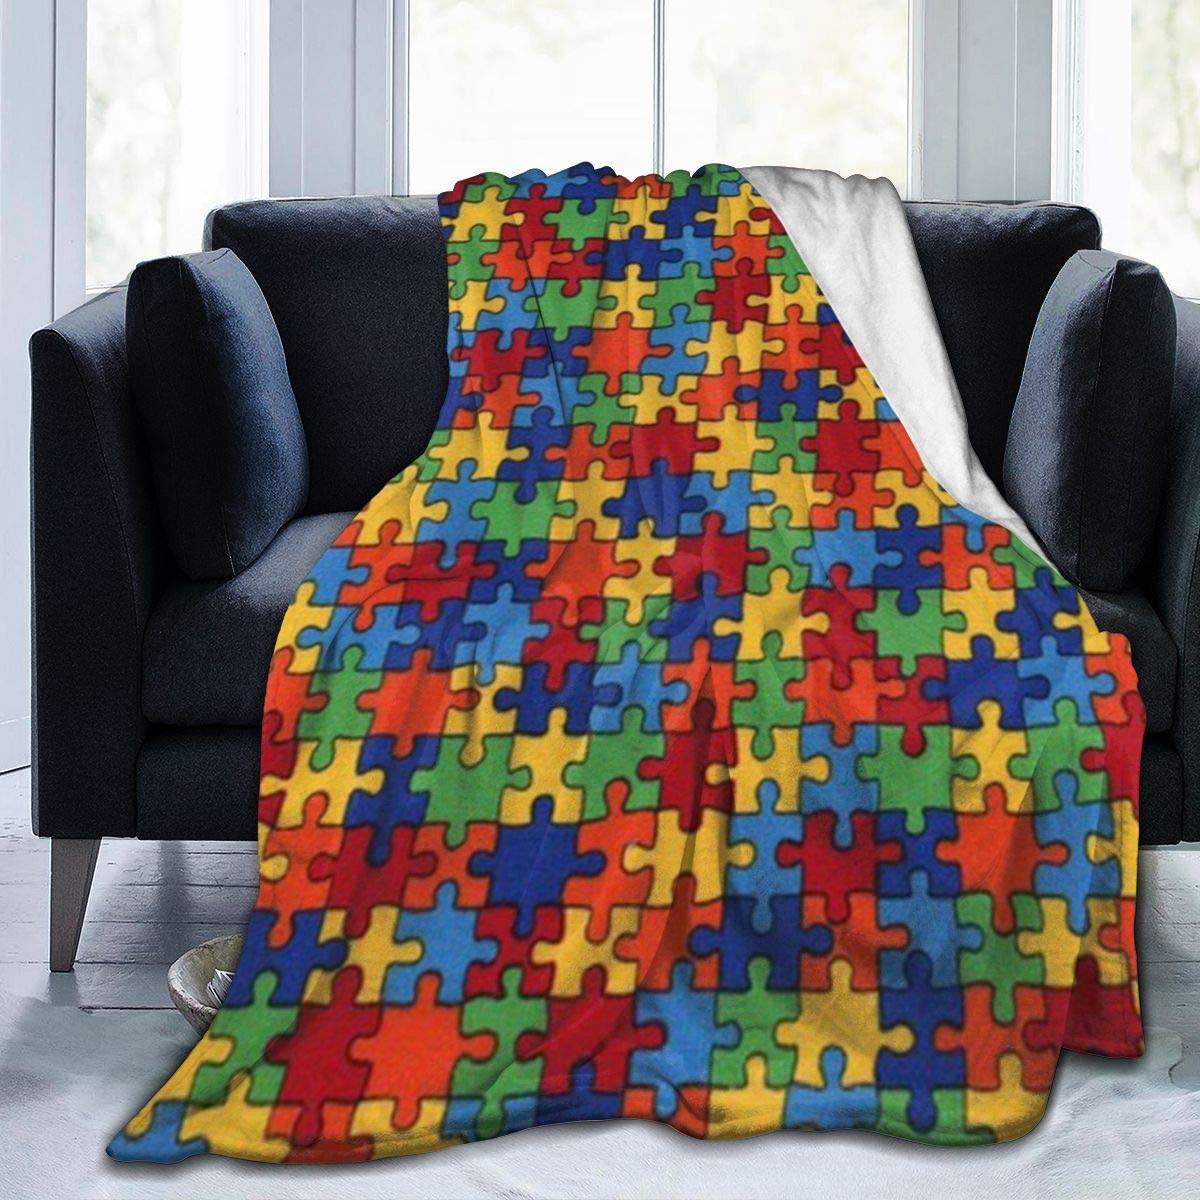 Puzzle blanket